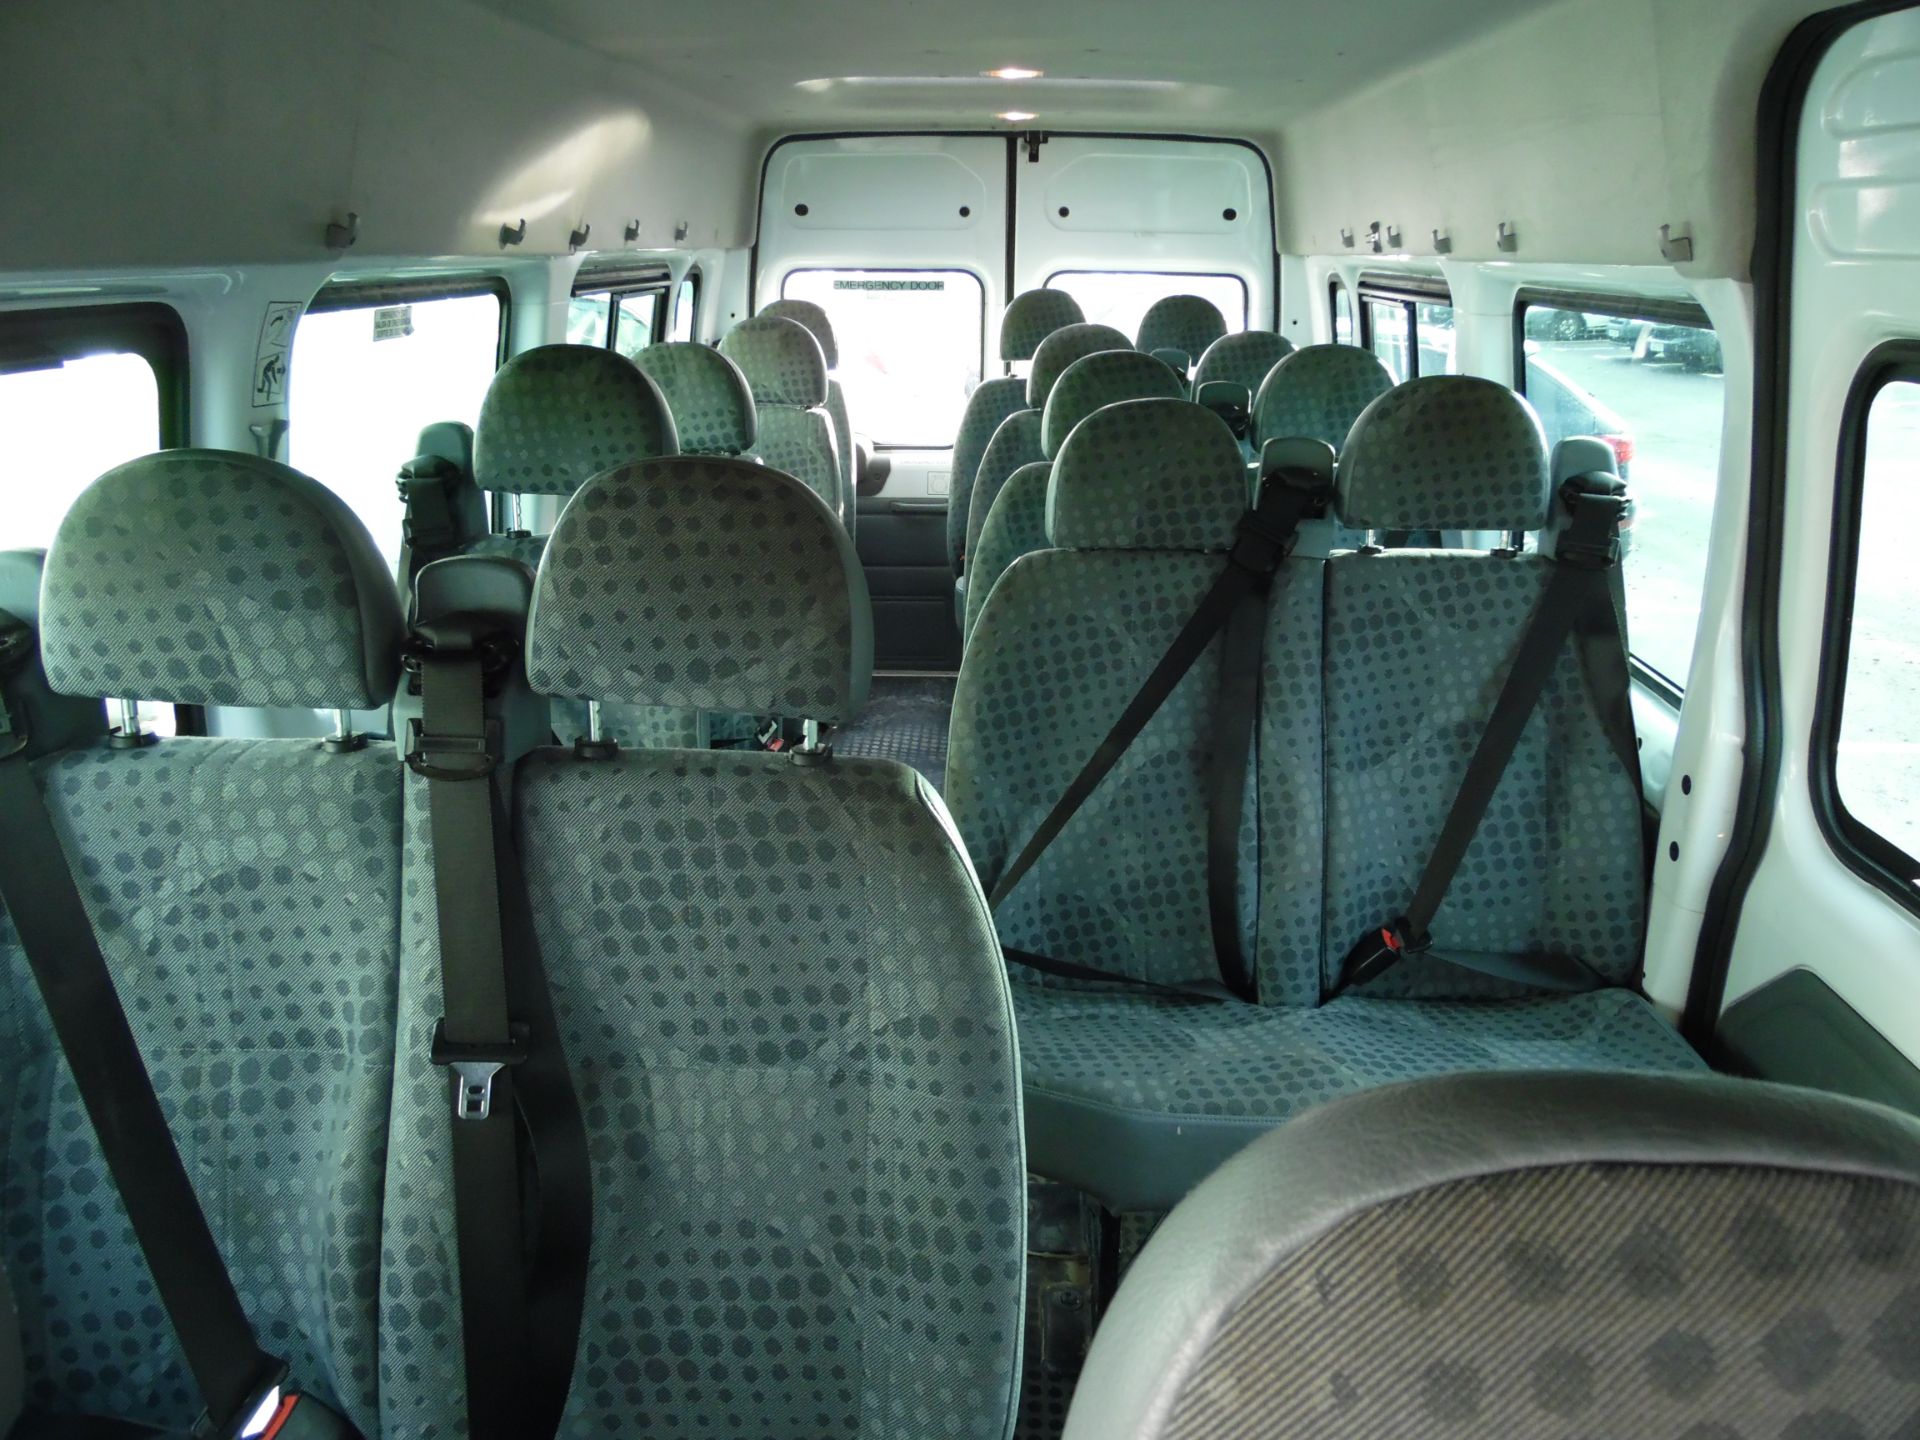 2012 FORD TRANSIT T430/135 17 SEAT MINIBUS - Image 9 of 12